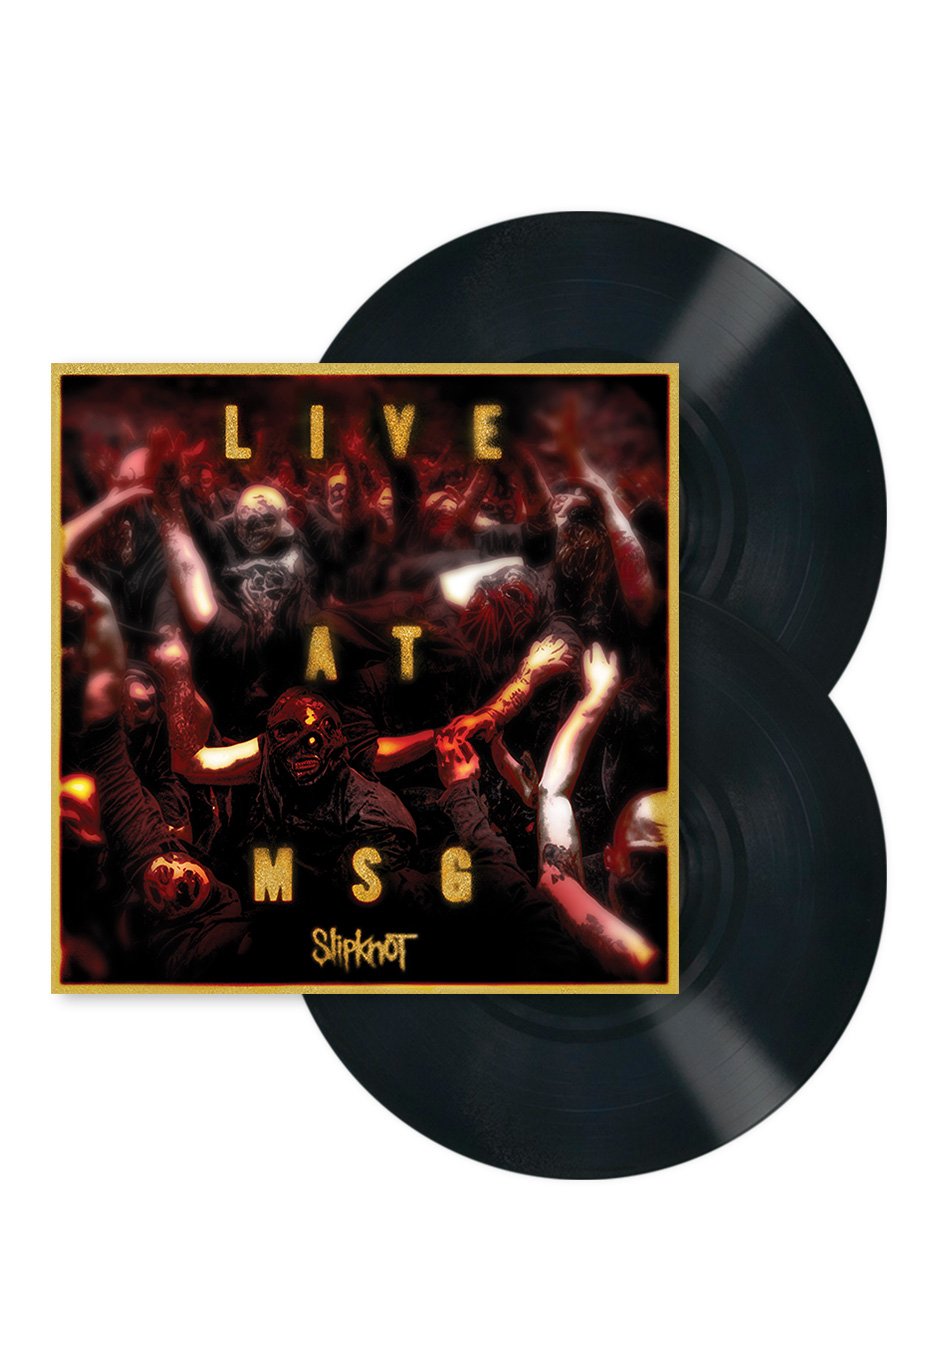 Slipknot - Live at MSG, 2009 - 2 Vinyl